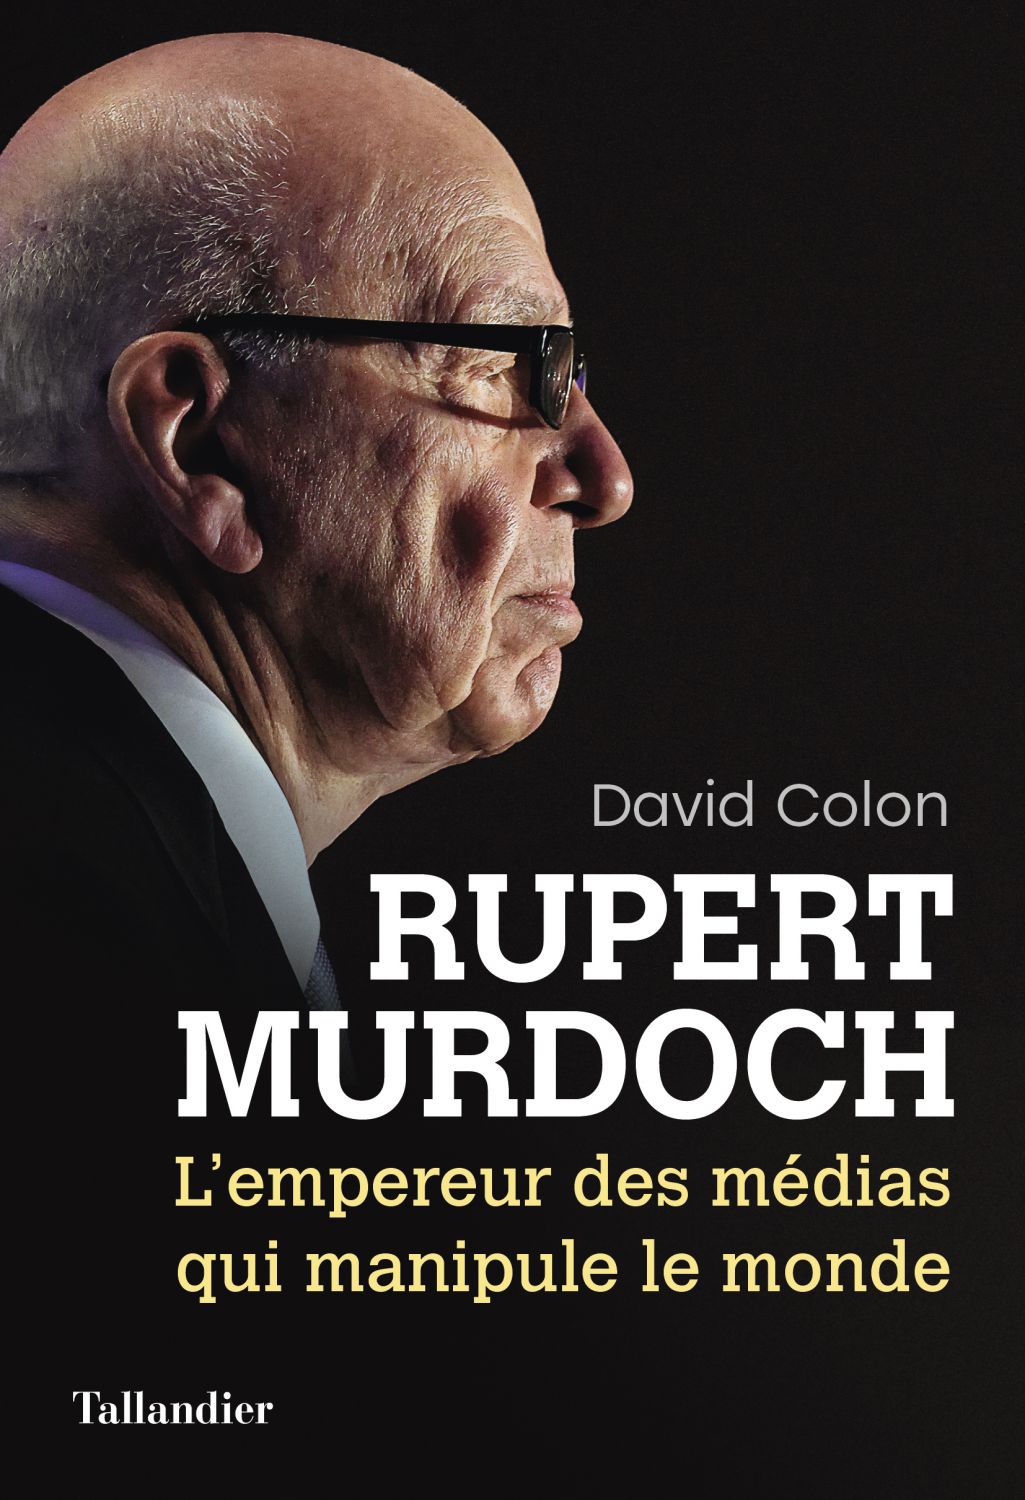 David Colon - Ruppert Murdoch - L'empereur des médias qui manipule le monde